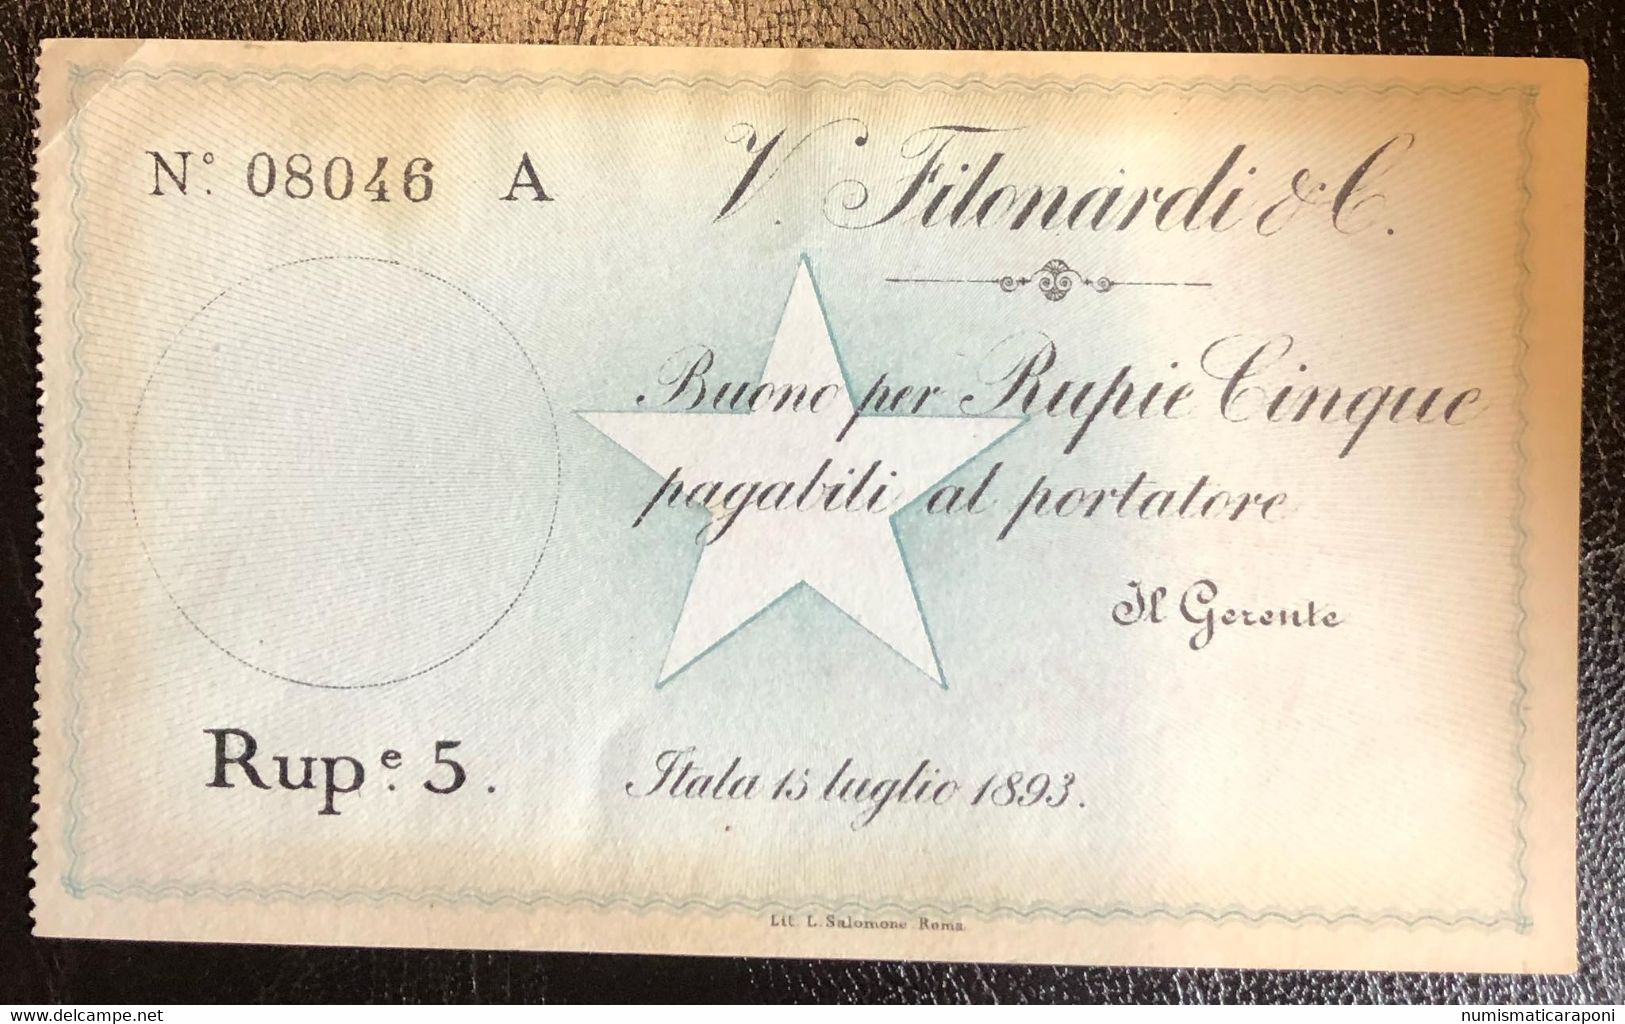 COMPAGNA ITALIANA PER IL BENADIR SOMALIA VINCENZO FILONARDI E C. 1893 5 RUPIE NON EMESSO R5 RRRRR Lotto.2475 - Somaliland